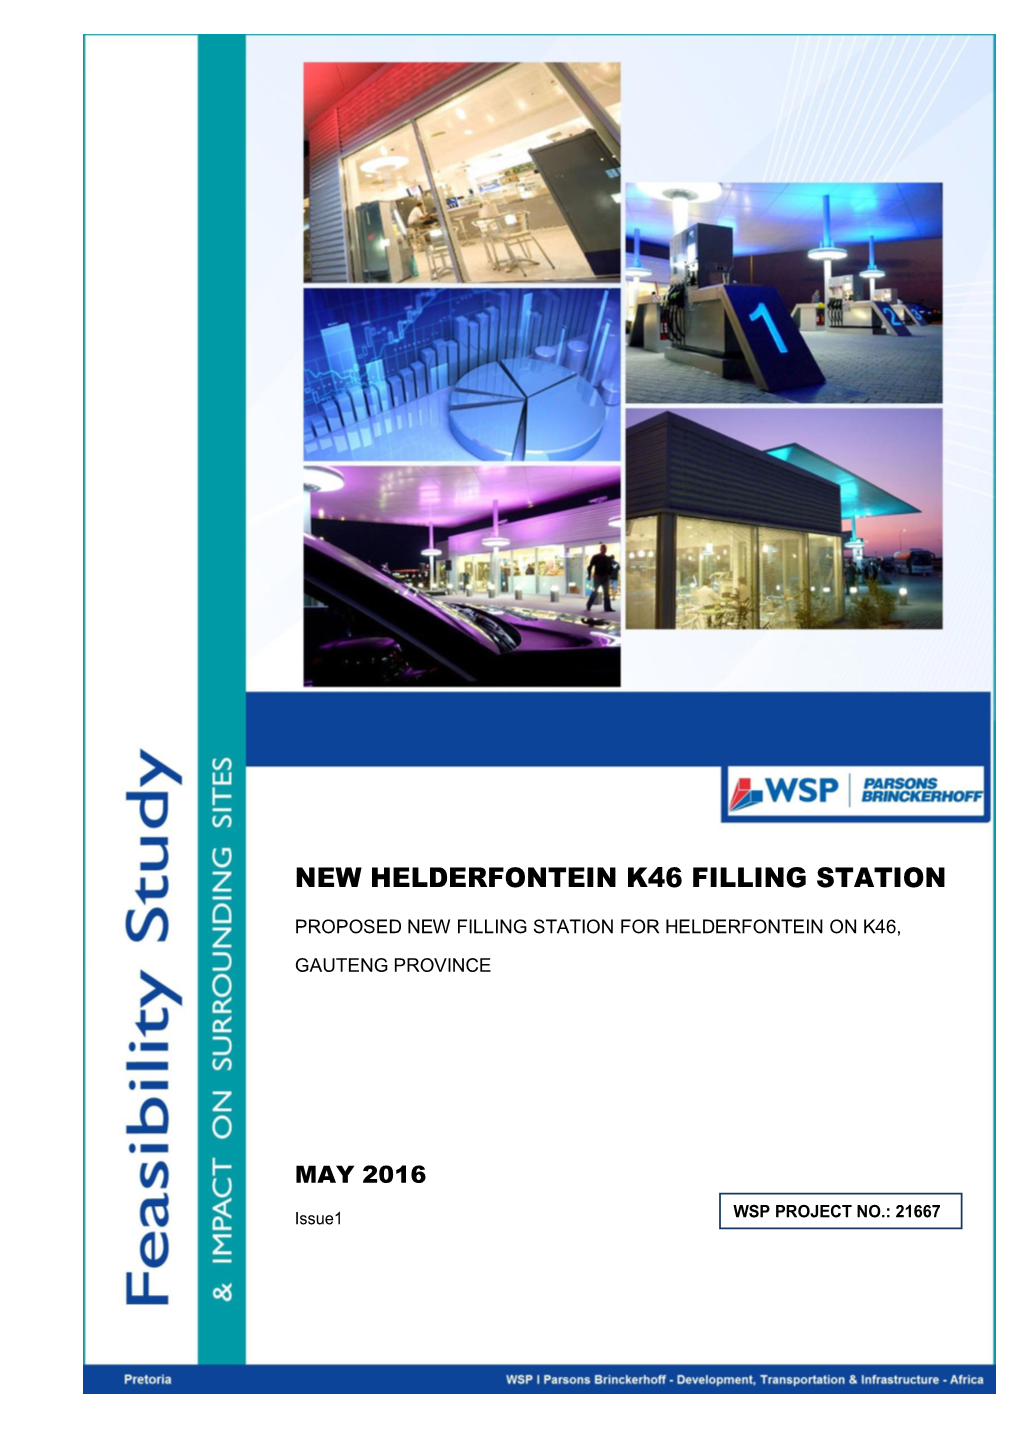 New Helderfontein K46 Filling Station